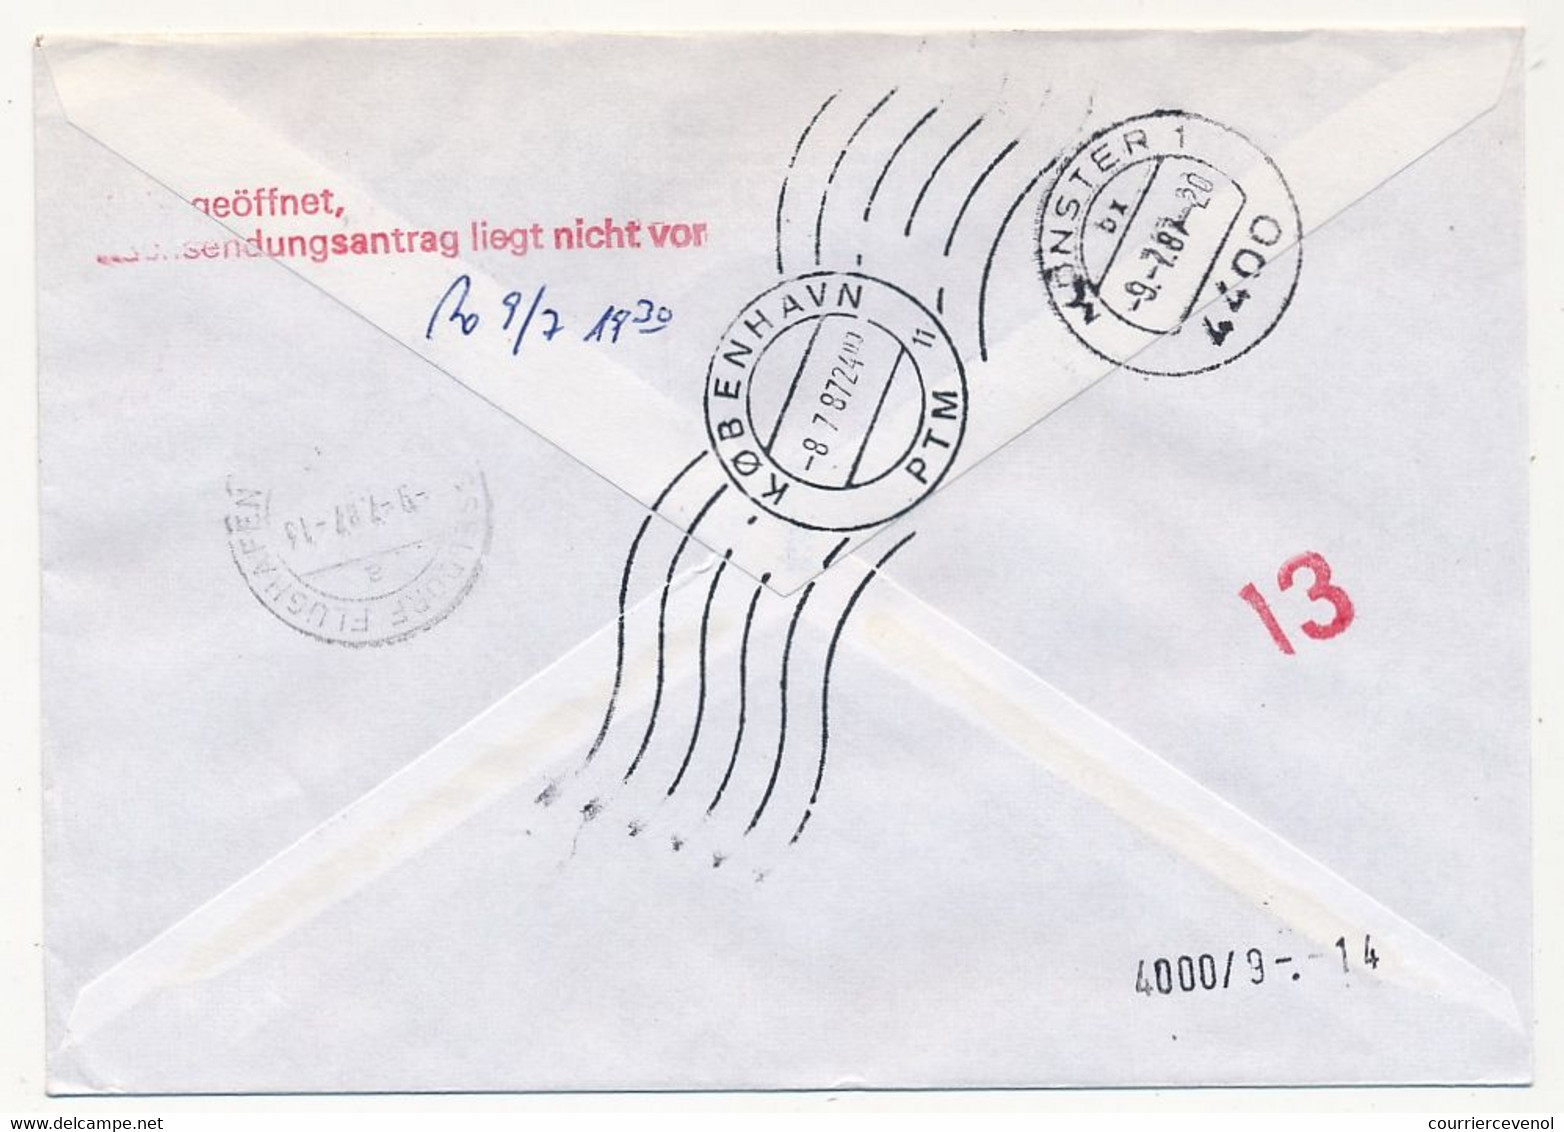 GROENLAND - 6 enveloppes Affranchissements composés divers, toutes en Exprès - 1984 à 1987